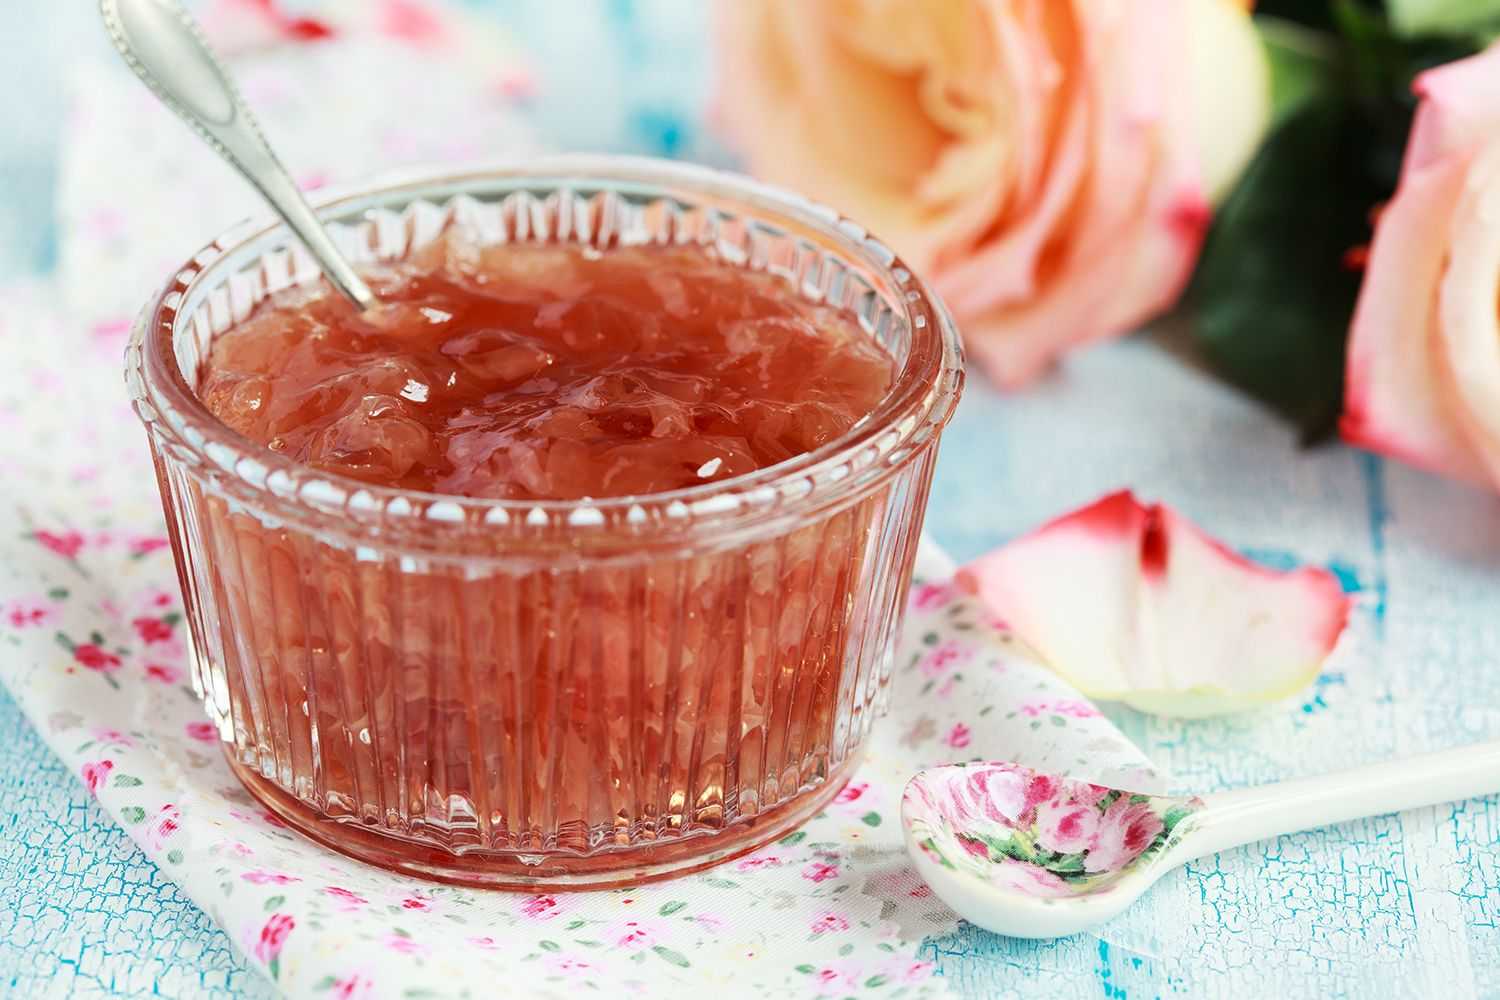 Лепестки роз — изысканный ингредиент для десертов